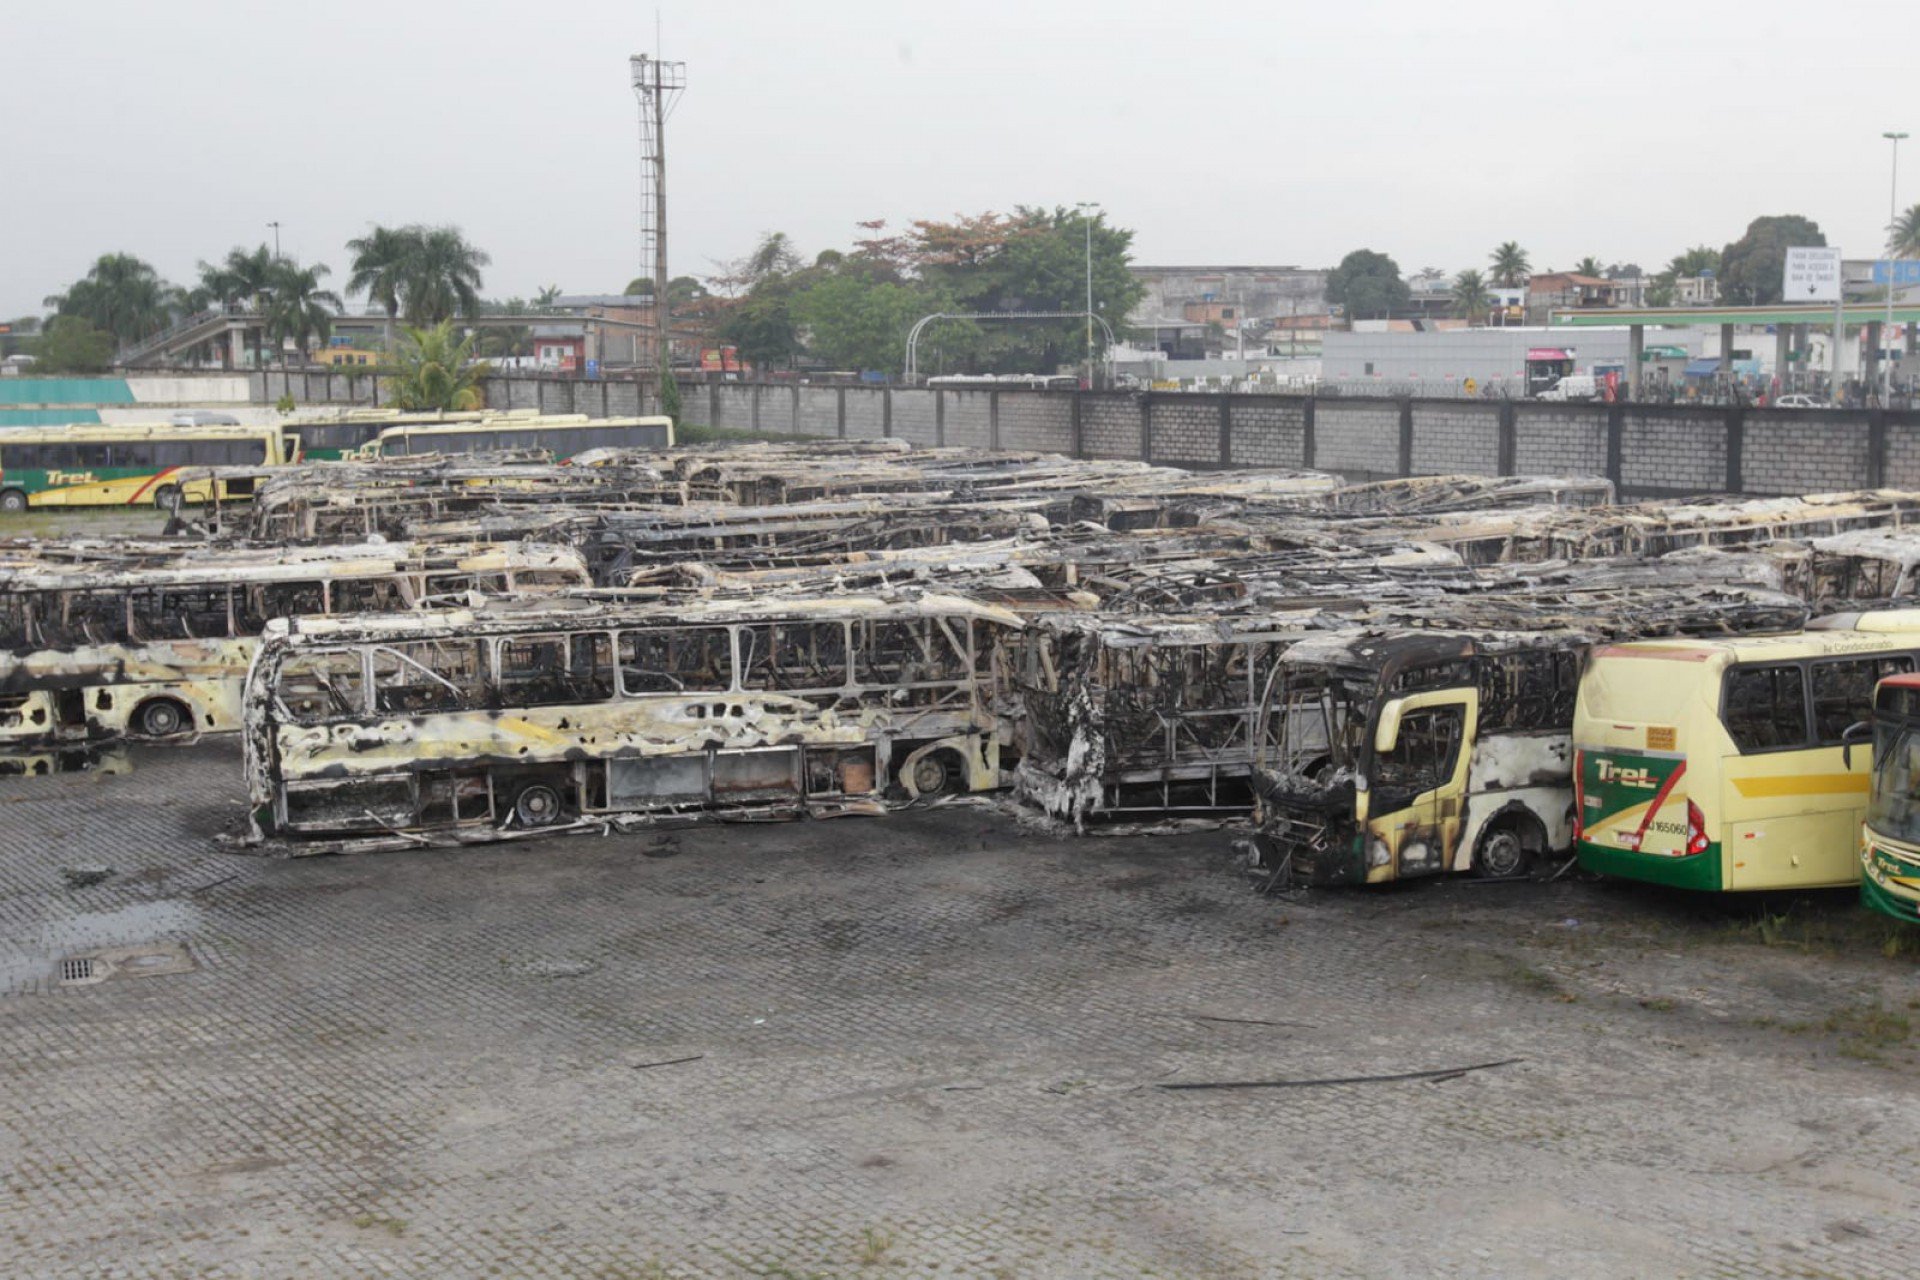 Incêndio destruiu mais de 40 ônibus na garagem da empresa Trel, em Caxias - Reginaldo Pimenta / Agência O DIA